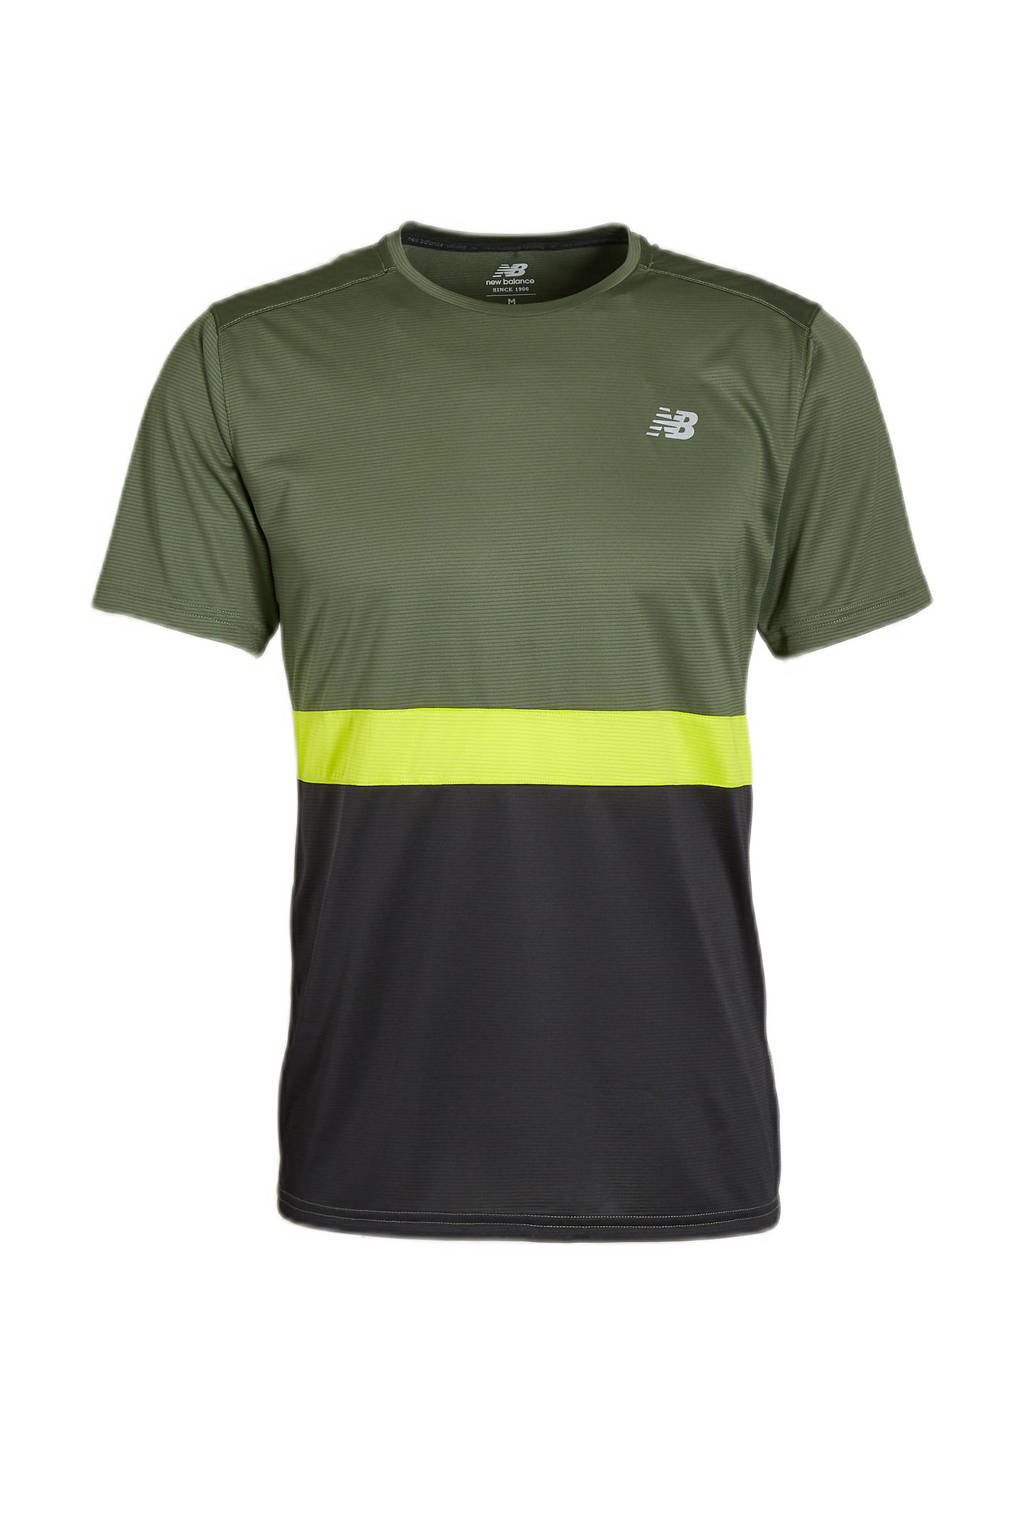 New Balance   hardloopshirt Striped Accelerate groen/zwart, Groen/zwart